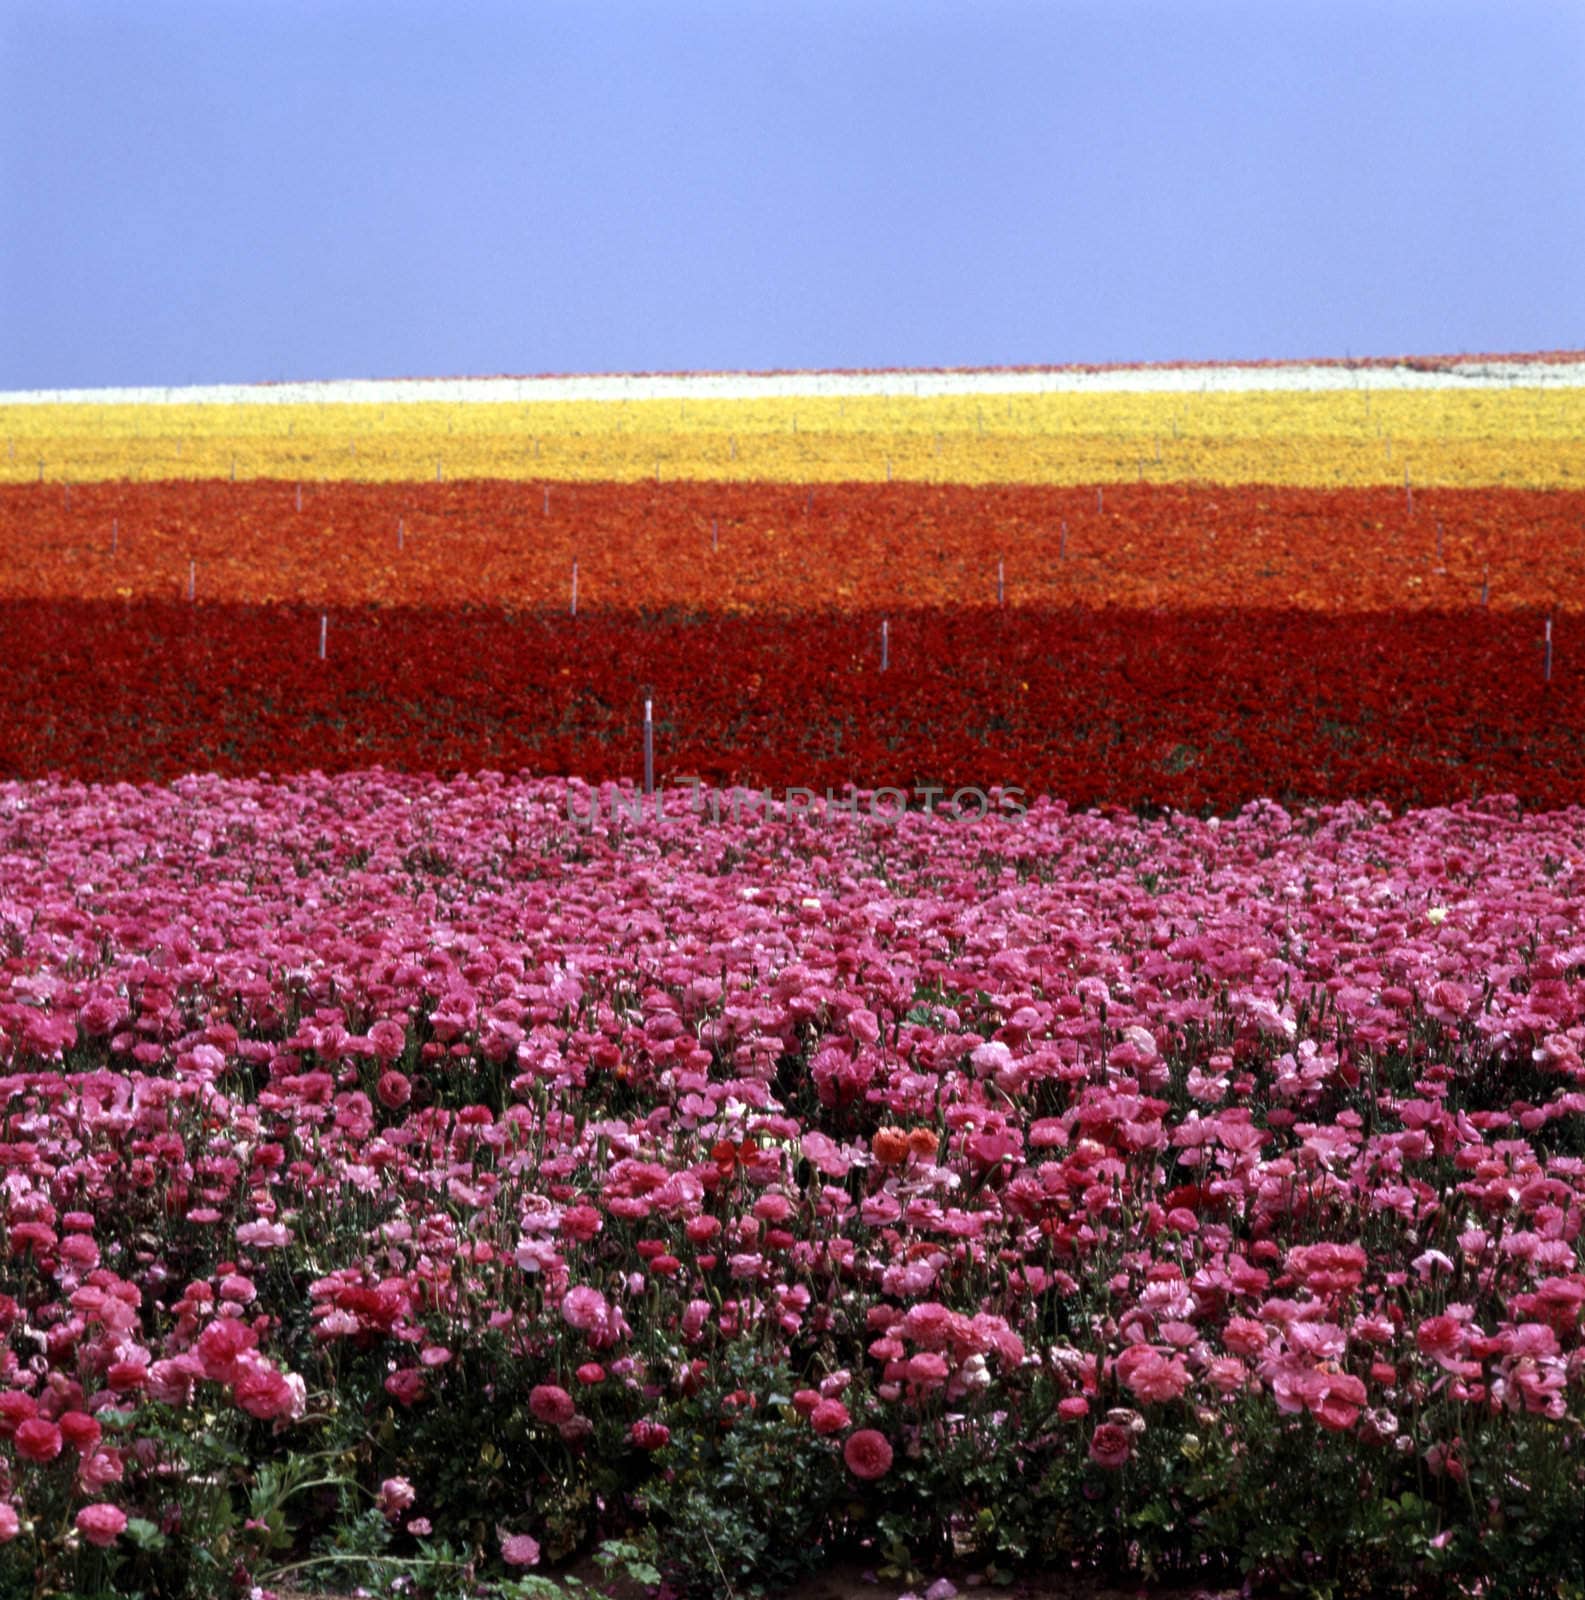 Flower field by jol66